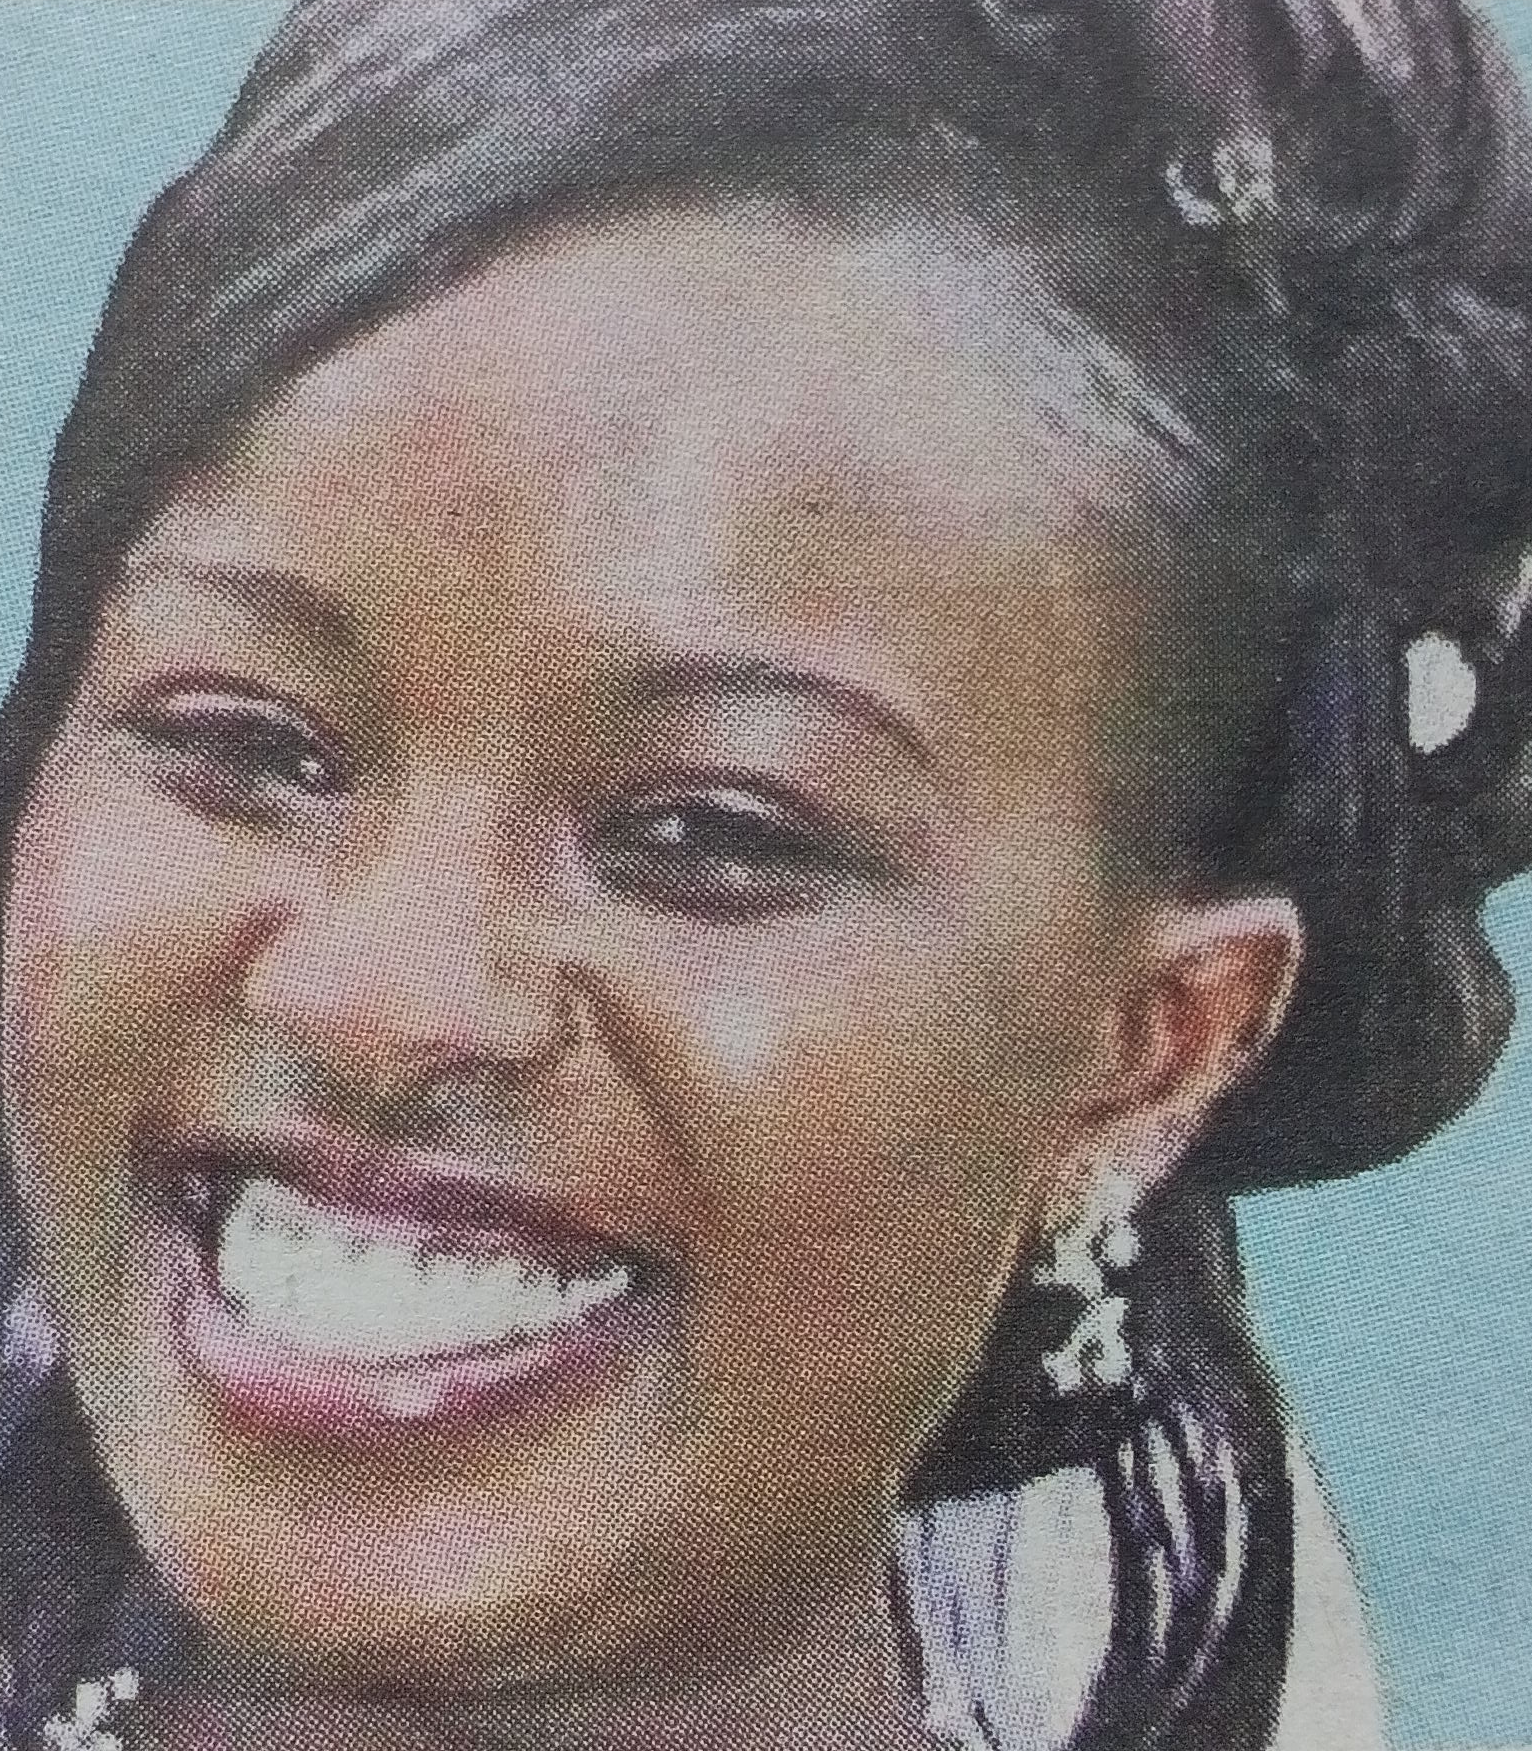 Obituary Image of Esther Wangui Kihato